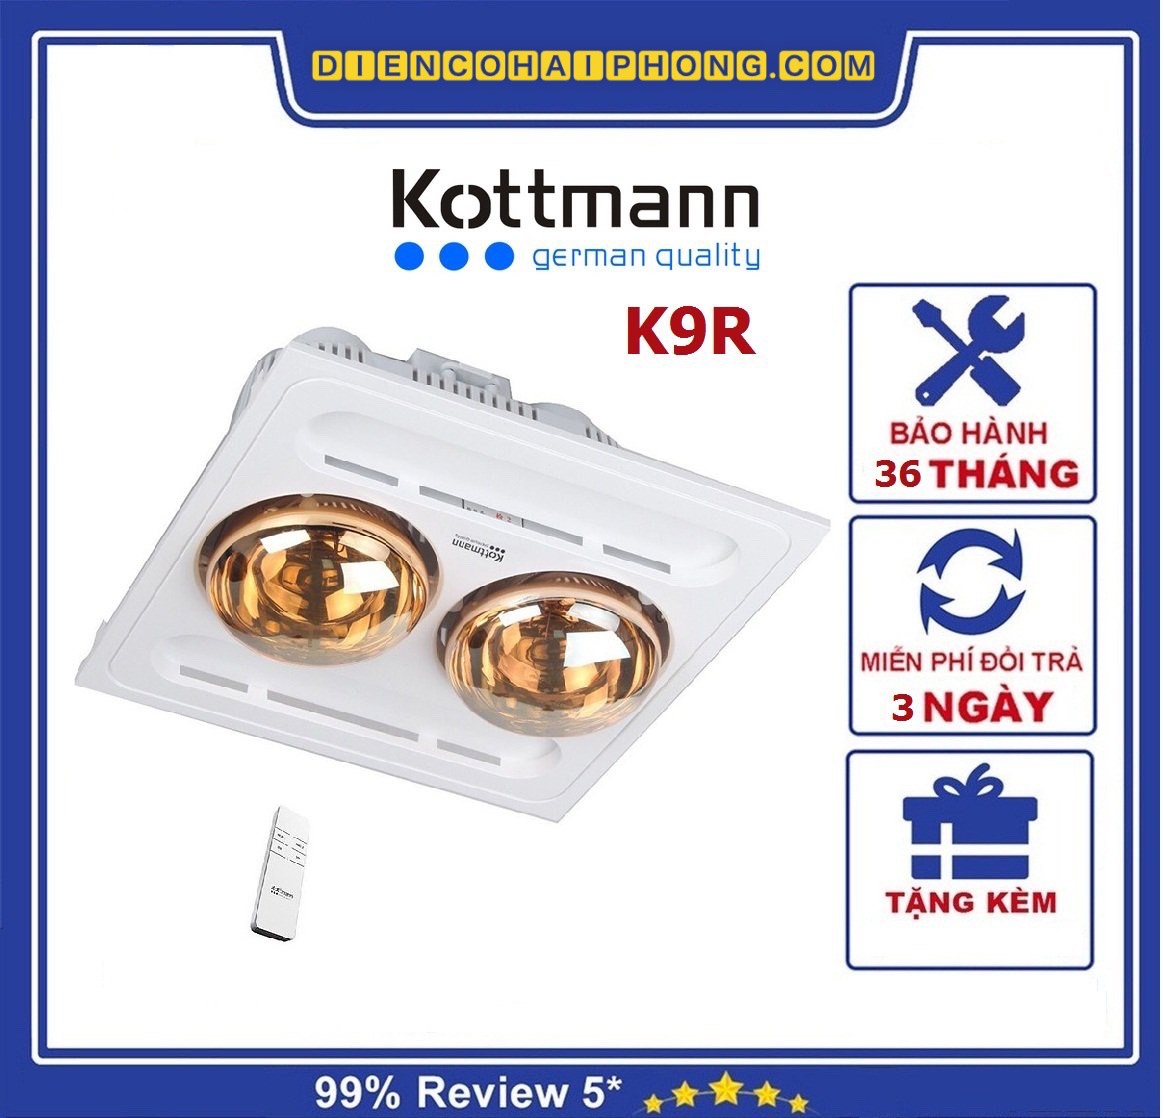 Đèn sưởi nhà tắm Kottmann 2 bóng âm trần K9R